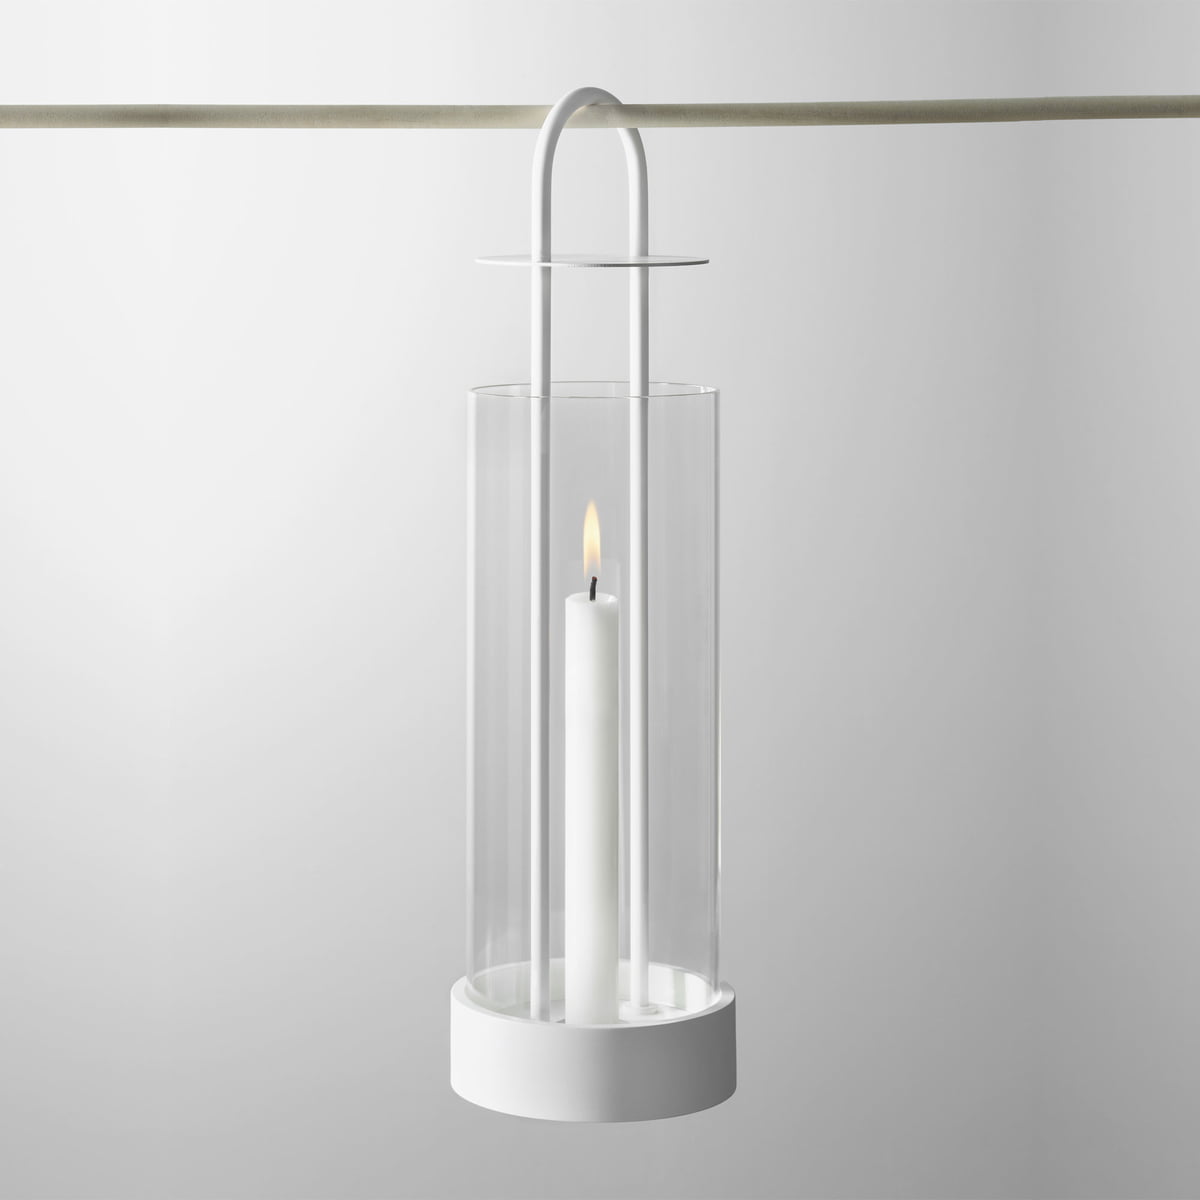 Design Stockholm House Lantern by Lotus